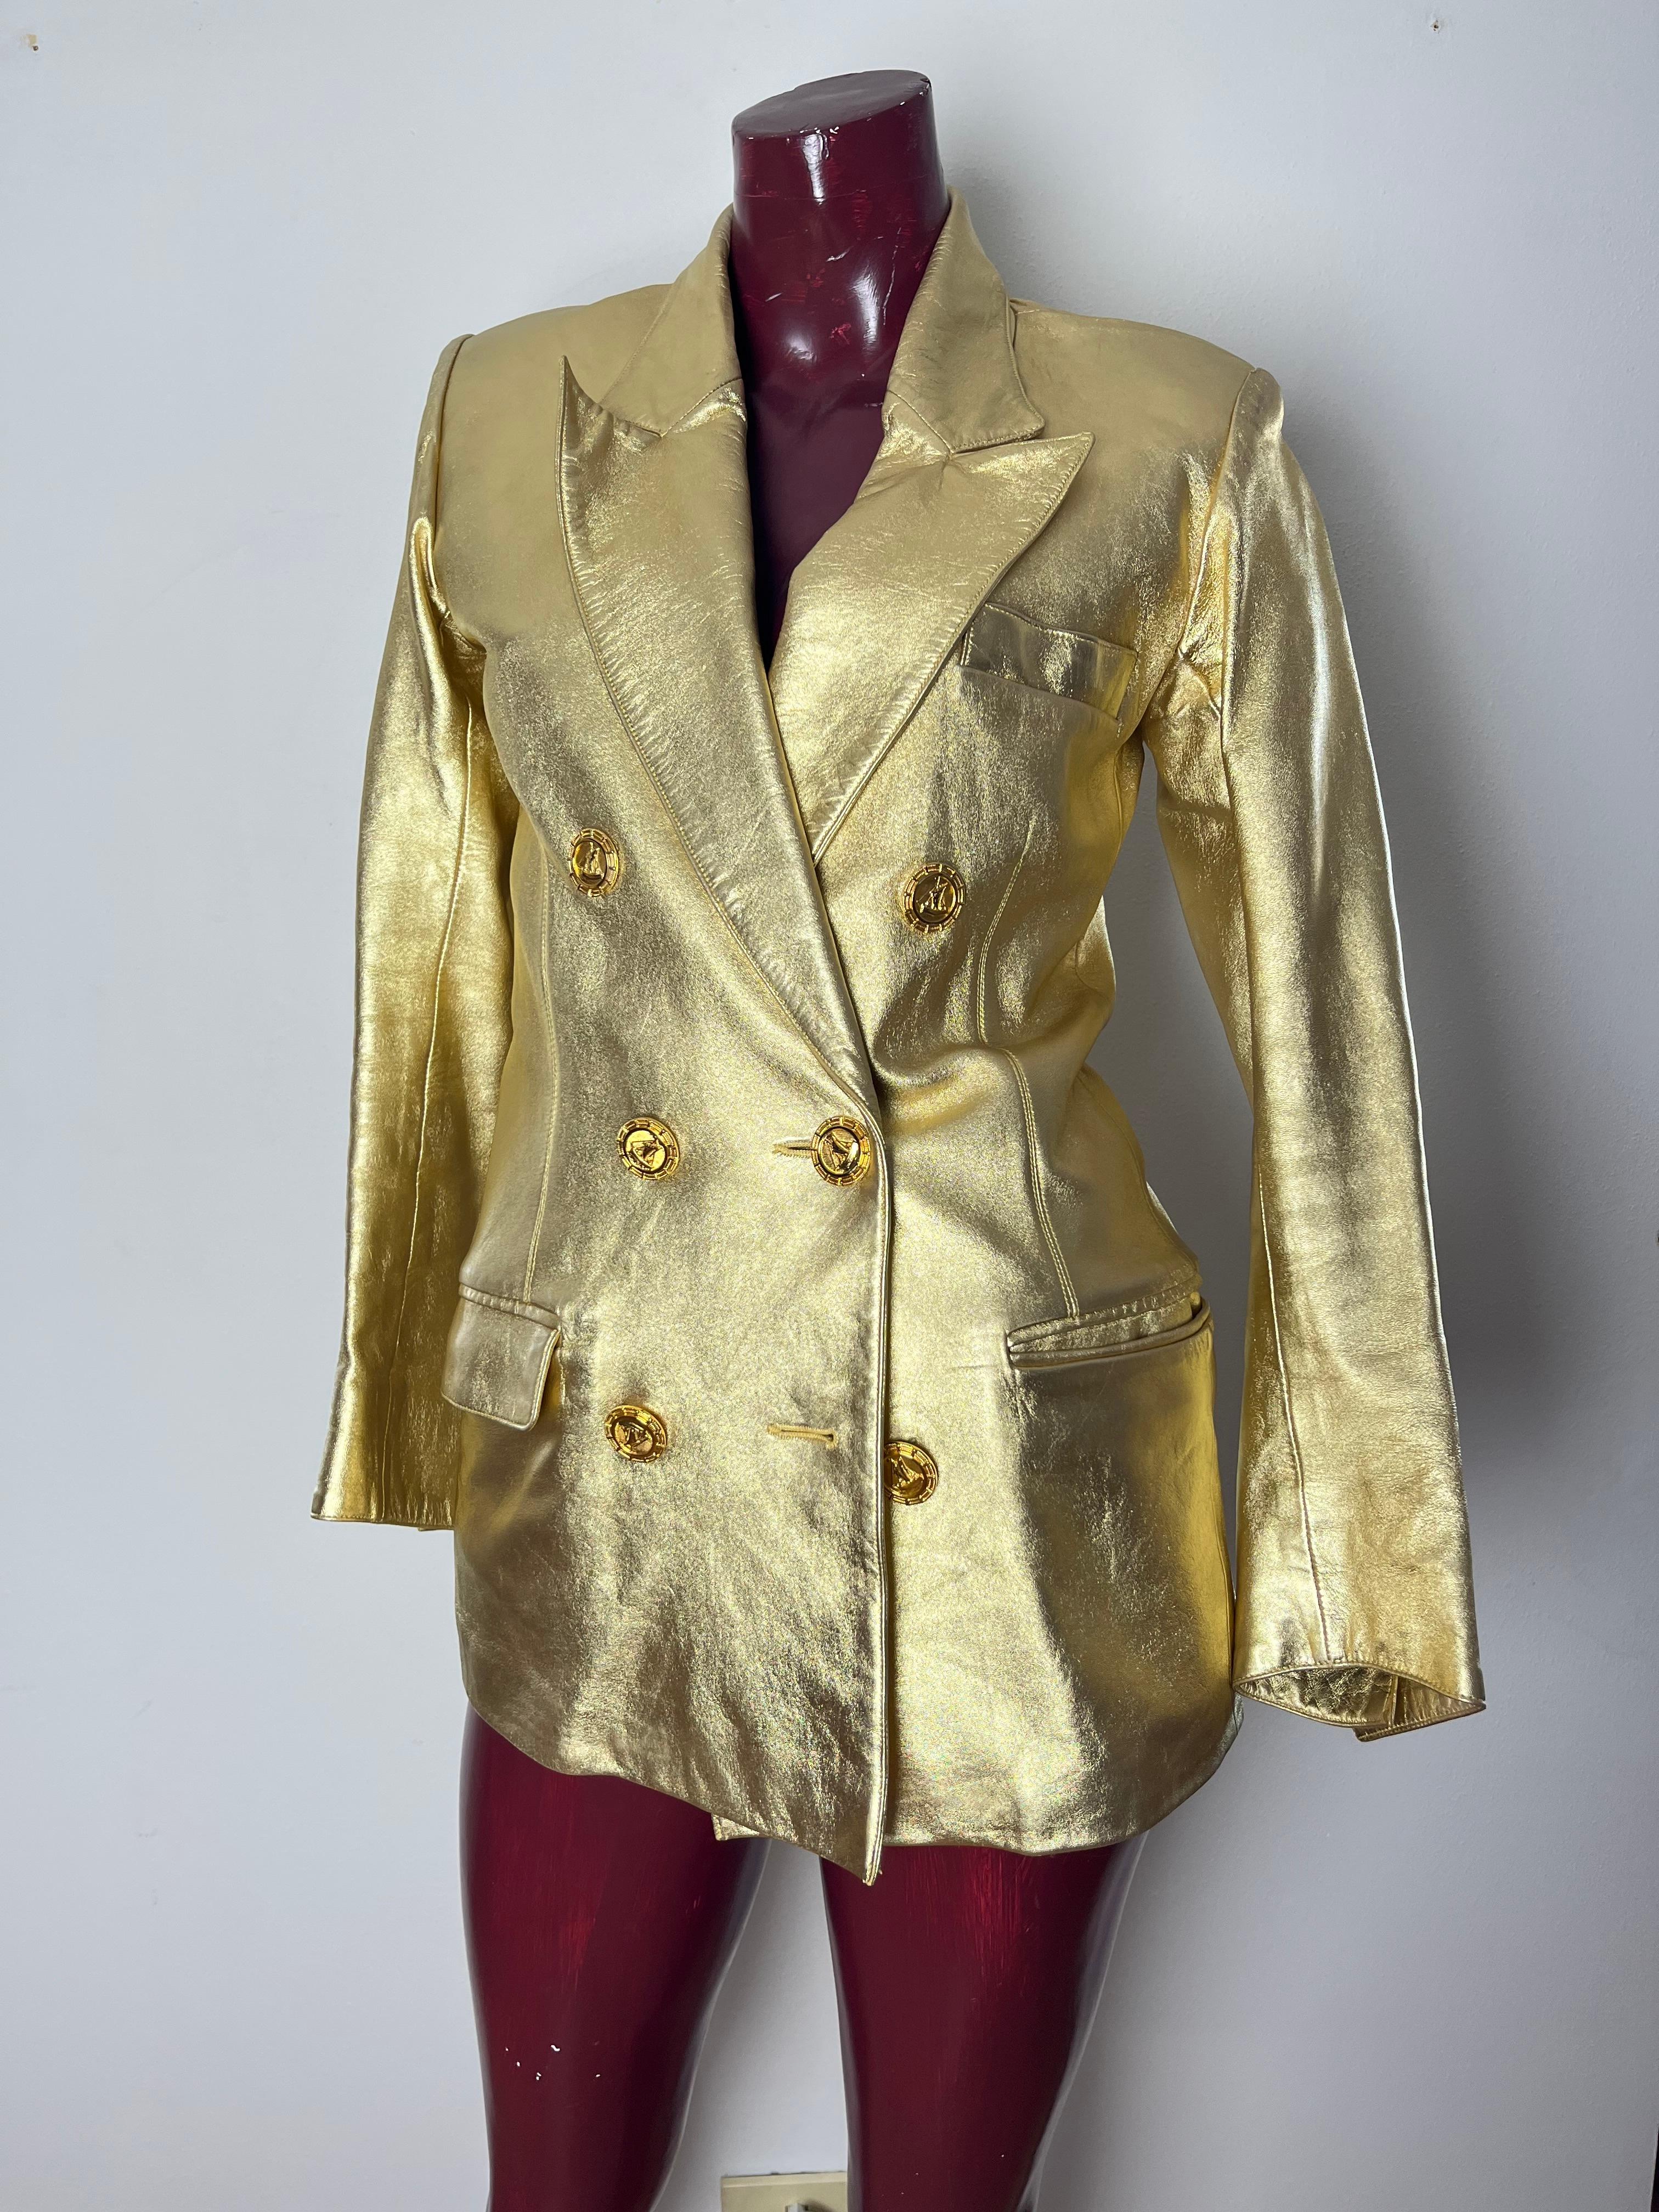 Iconica giacca YSL in pelle di capretto dorata circa 1985.  giacca doppio petto  Bottoni con vascello in bronzo dorato Fodera in charmeuse di seta nera. Realisiert von YSL Haute Couture.  Iconico è un termine spesso utilizzato. Dieses Kleid ist ein